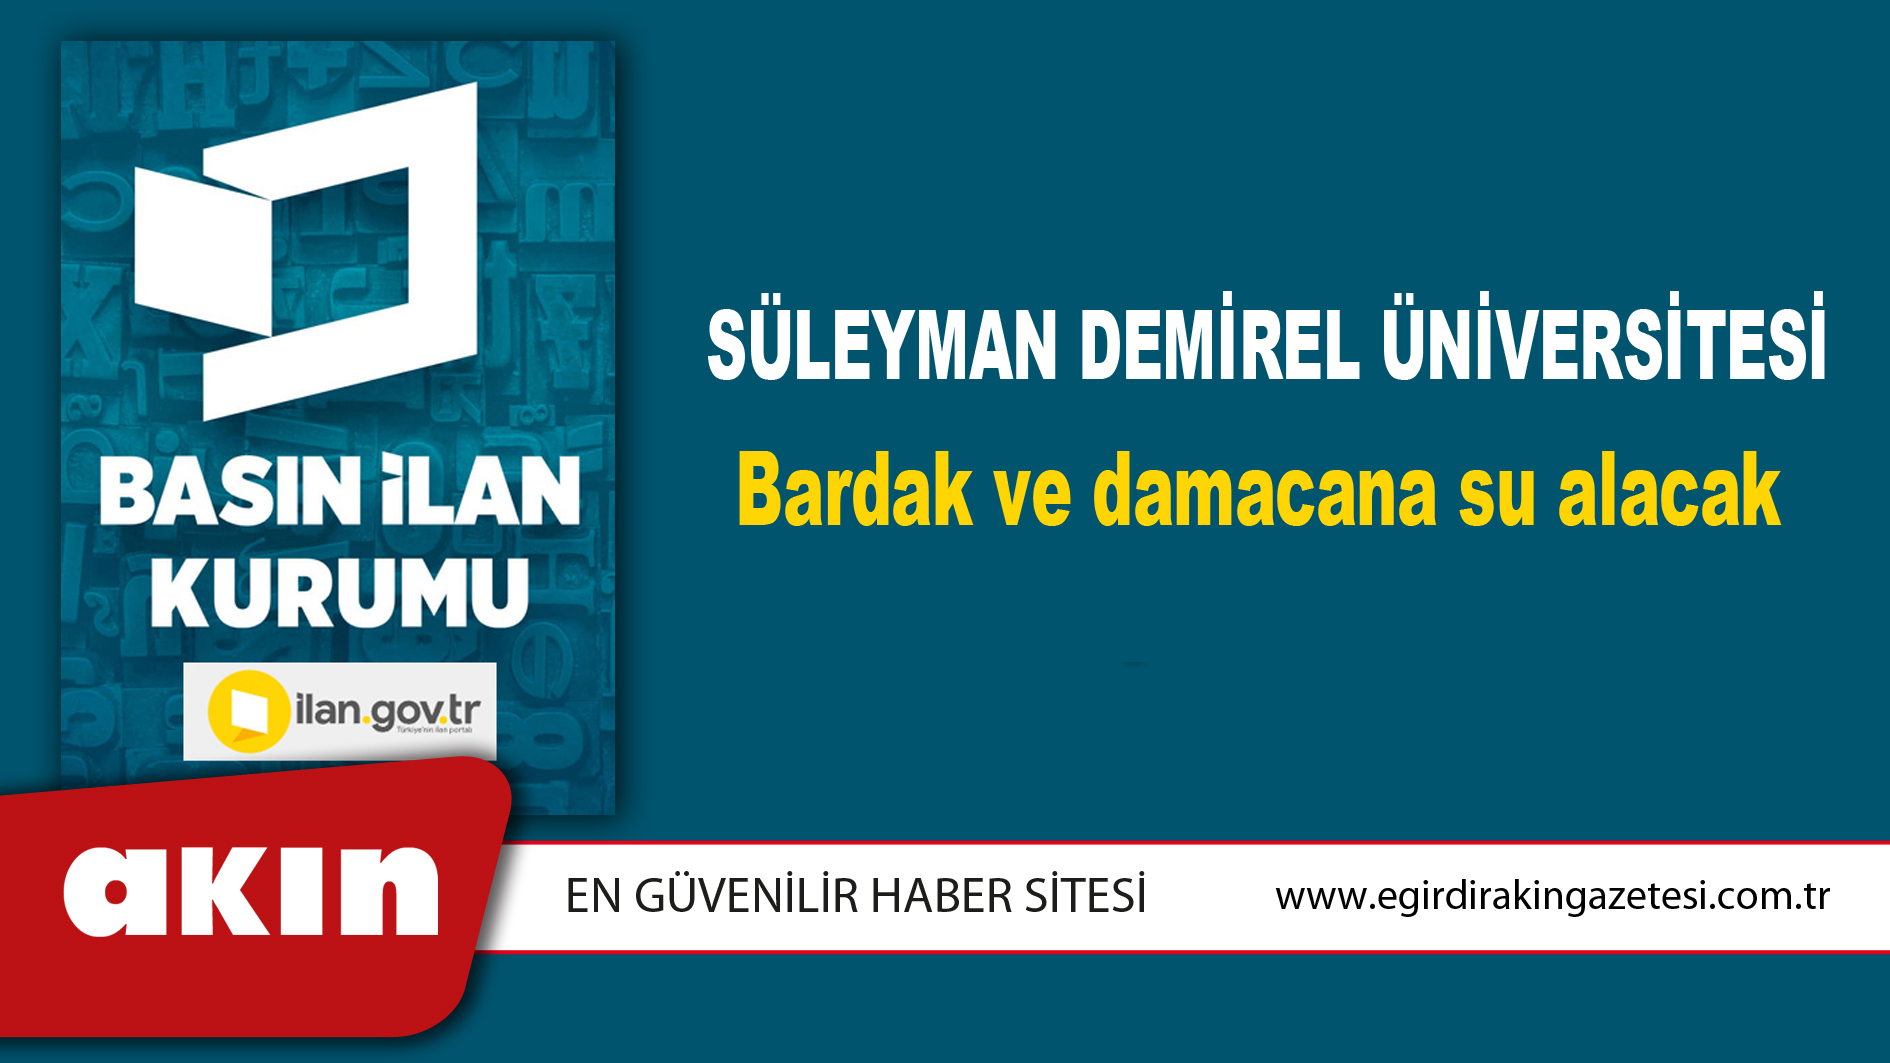 Süleyman Demirel Üniversitesi Bardak ve damacana su alacak